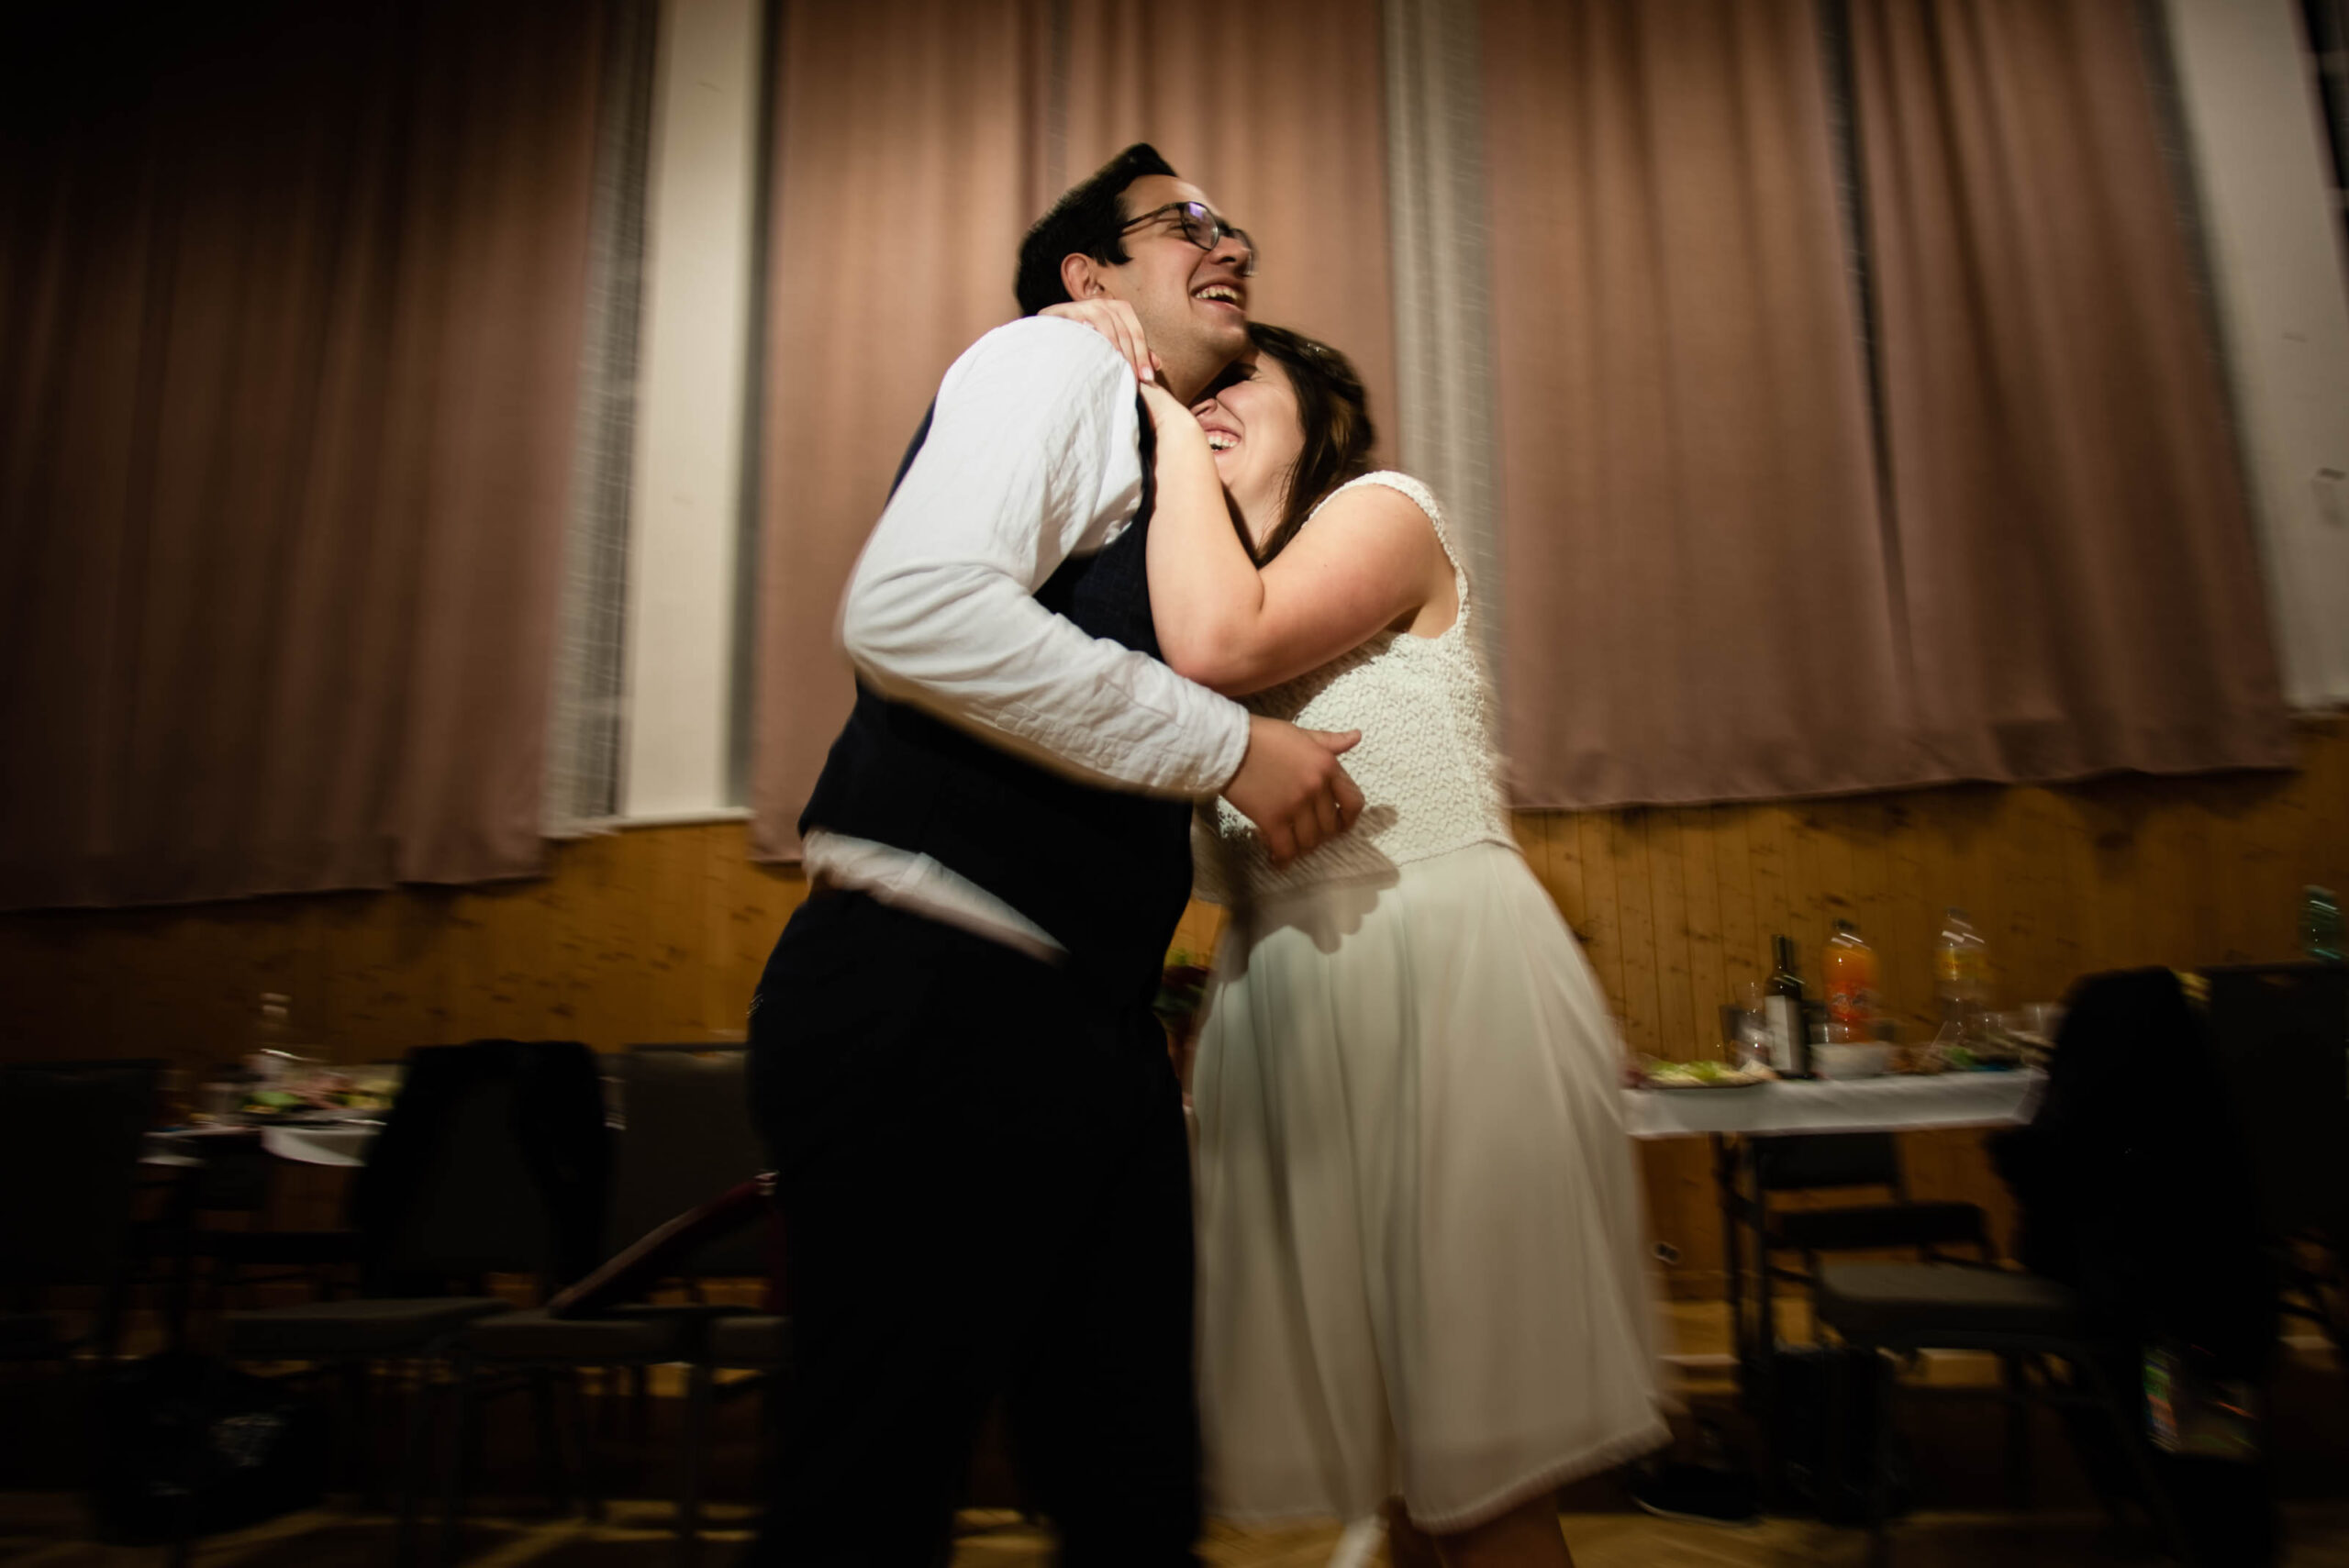 Svatební zábava, tanec | Svatební fotograf Brno